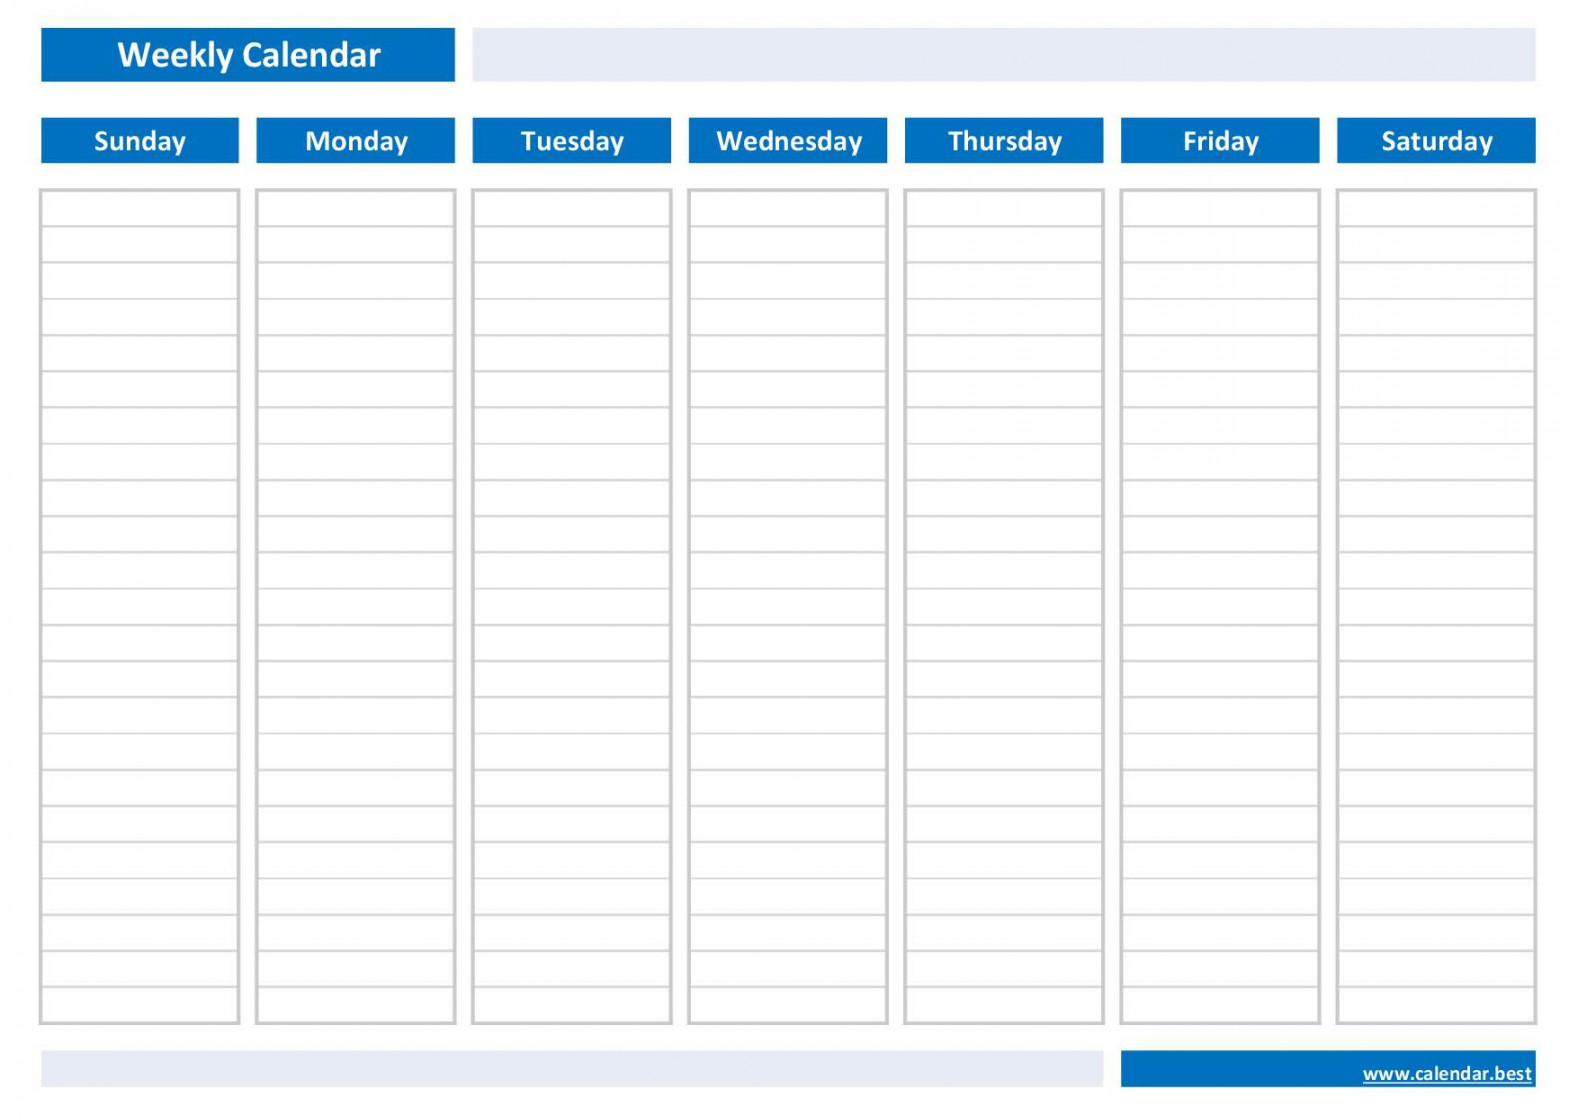 Weekly calendar, weekly schedule -Calendar